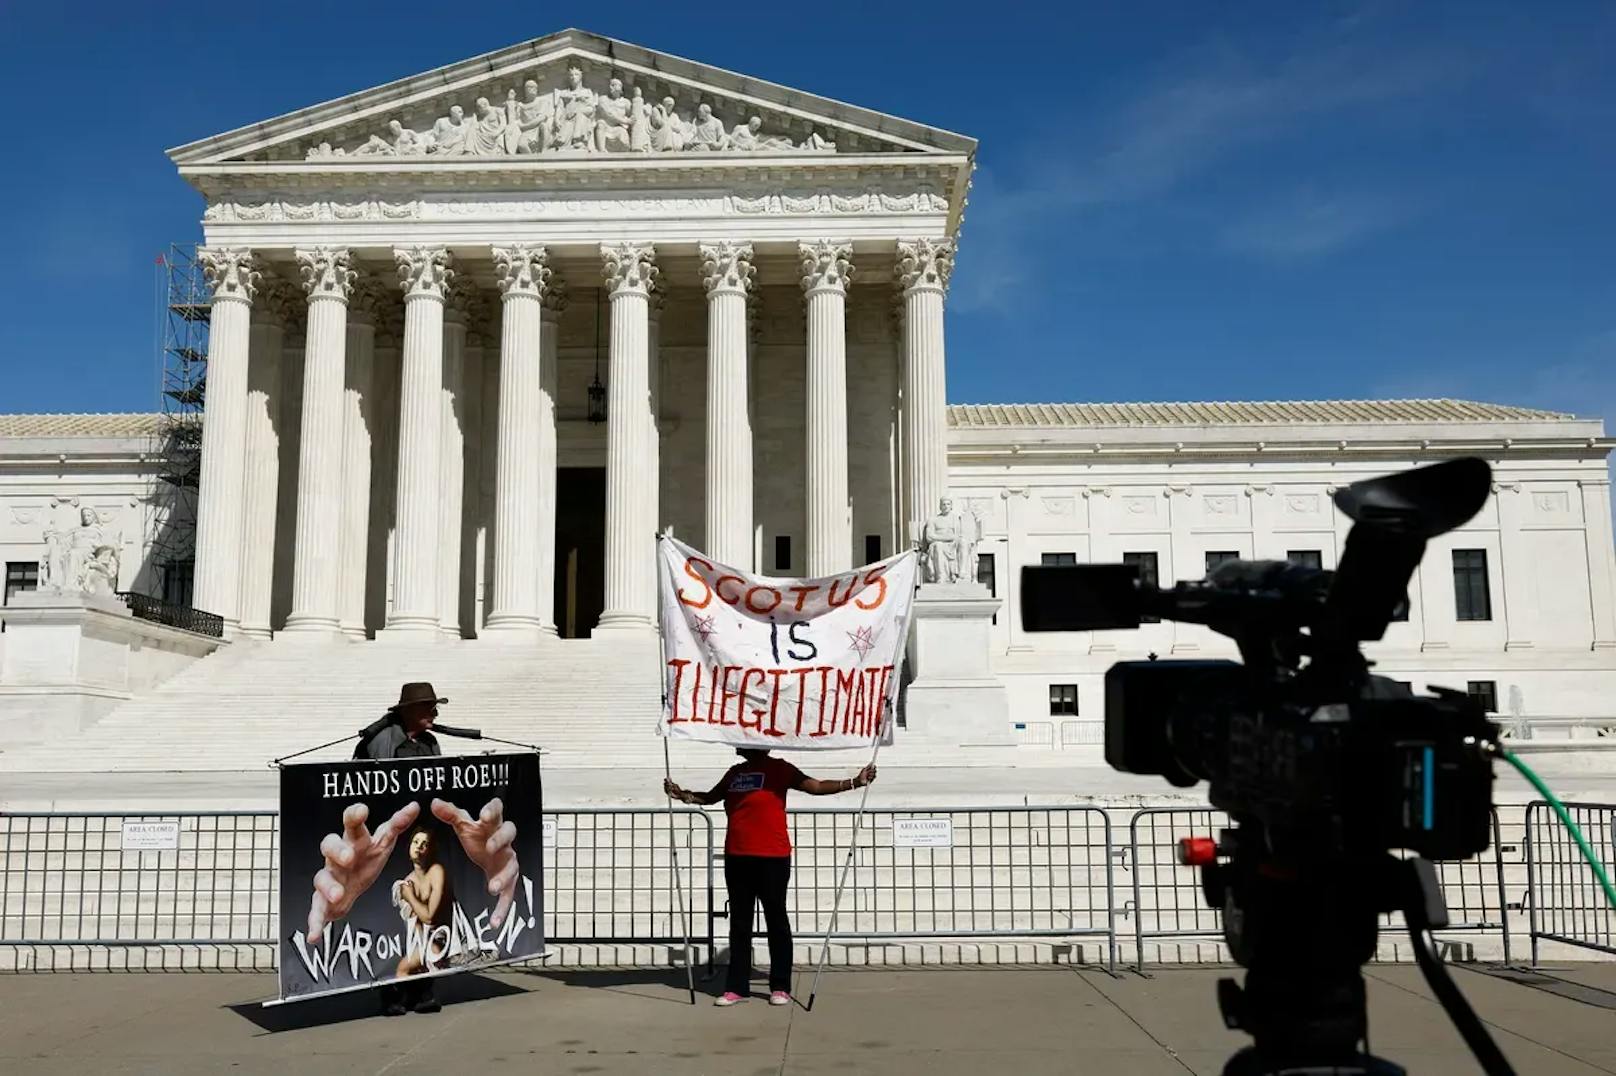 Supreme Court sichert vorerst Zugang zu Abtreibungspille